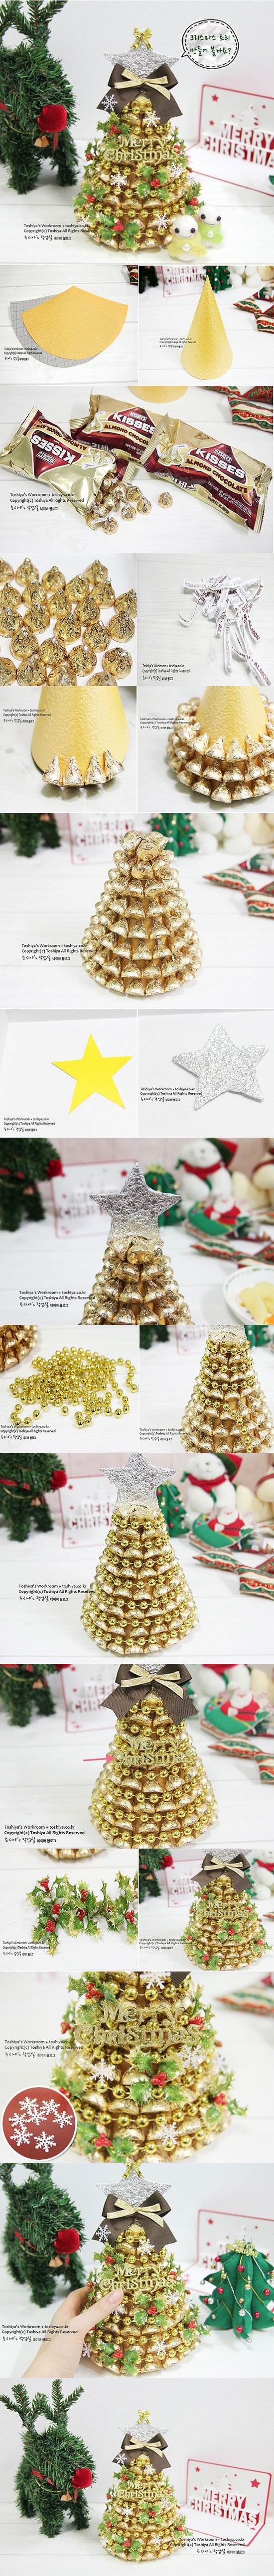 DIY Chocolate Christmas Tree 2